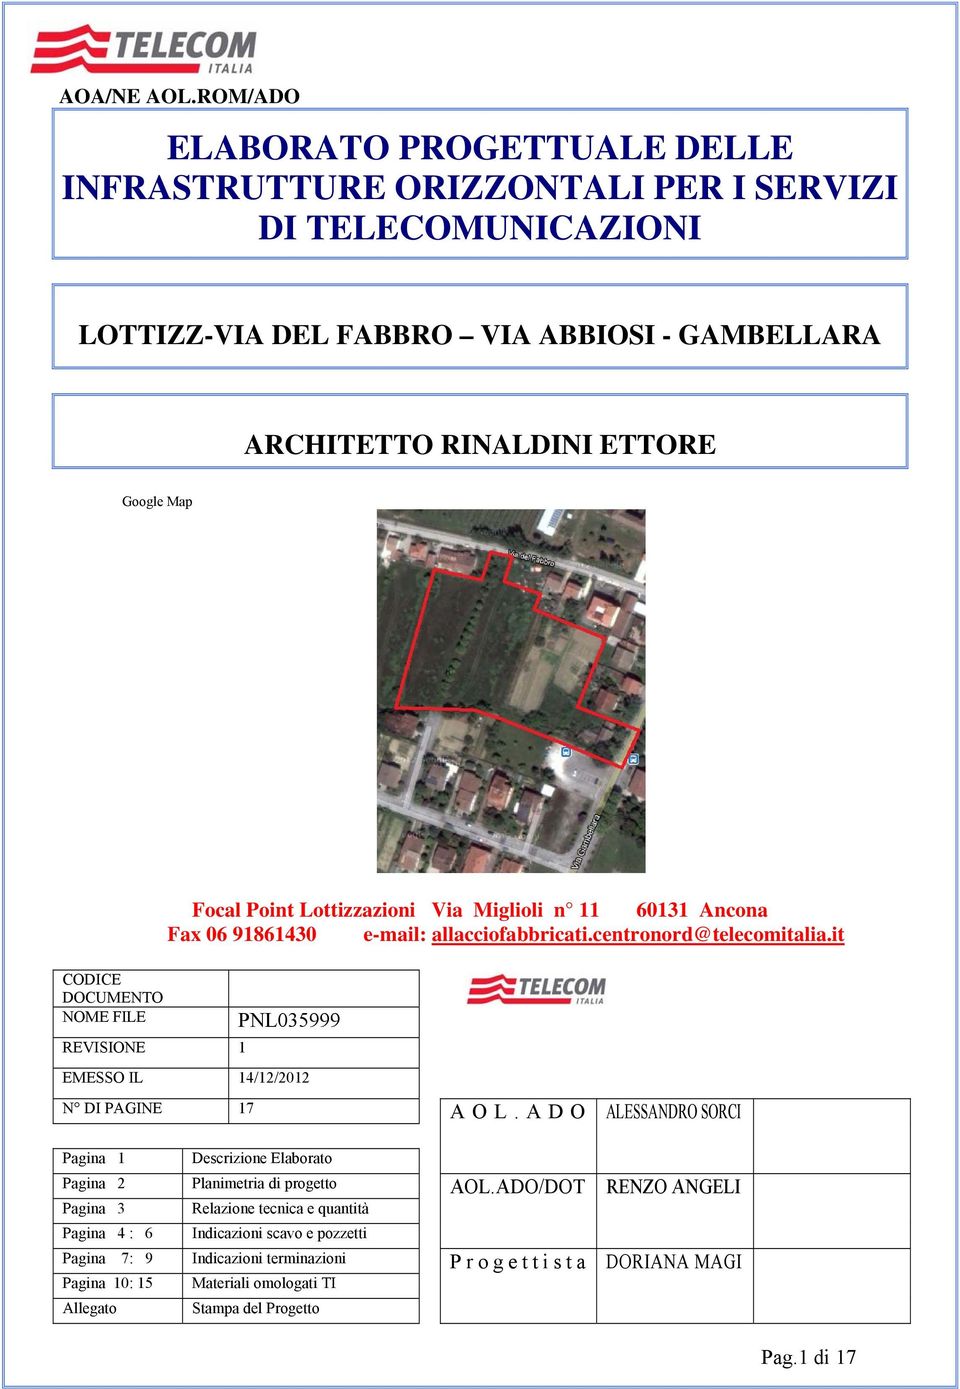 Focal Point Lottizzazioni Via Miglioli n 11 60131 Ancona Fax 06 91861430 e-mail: allacciofabbricati.centronord@telecomitalia.